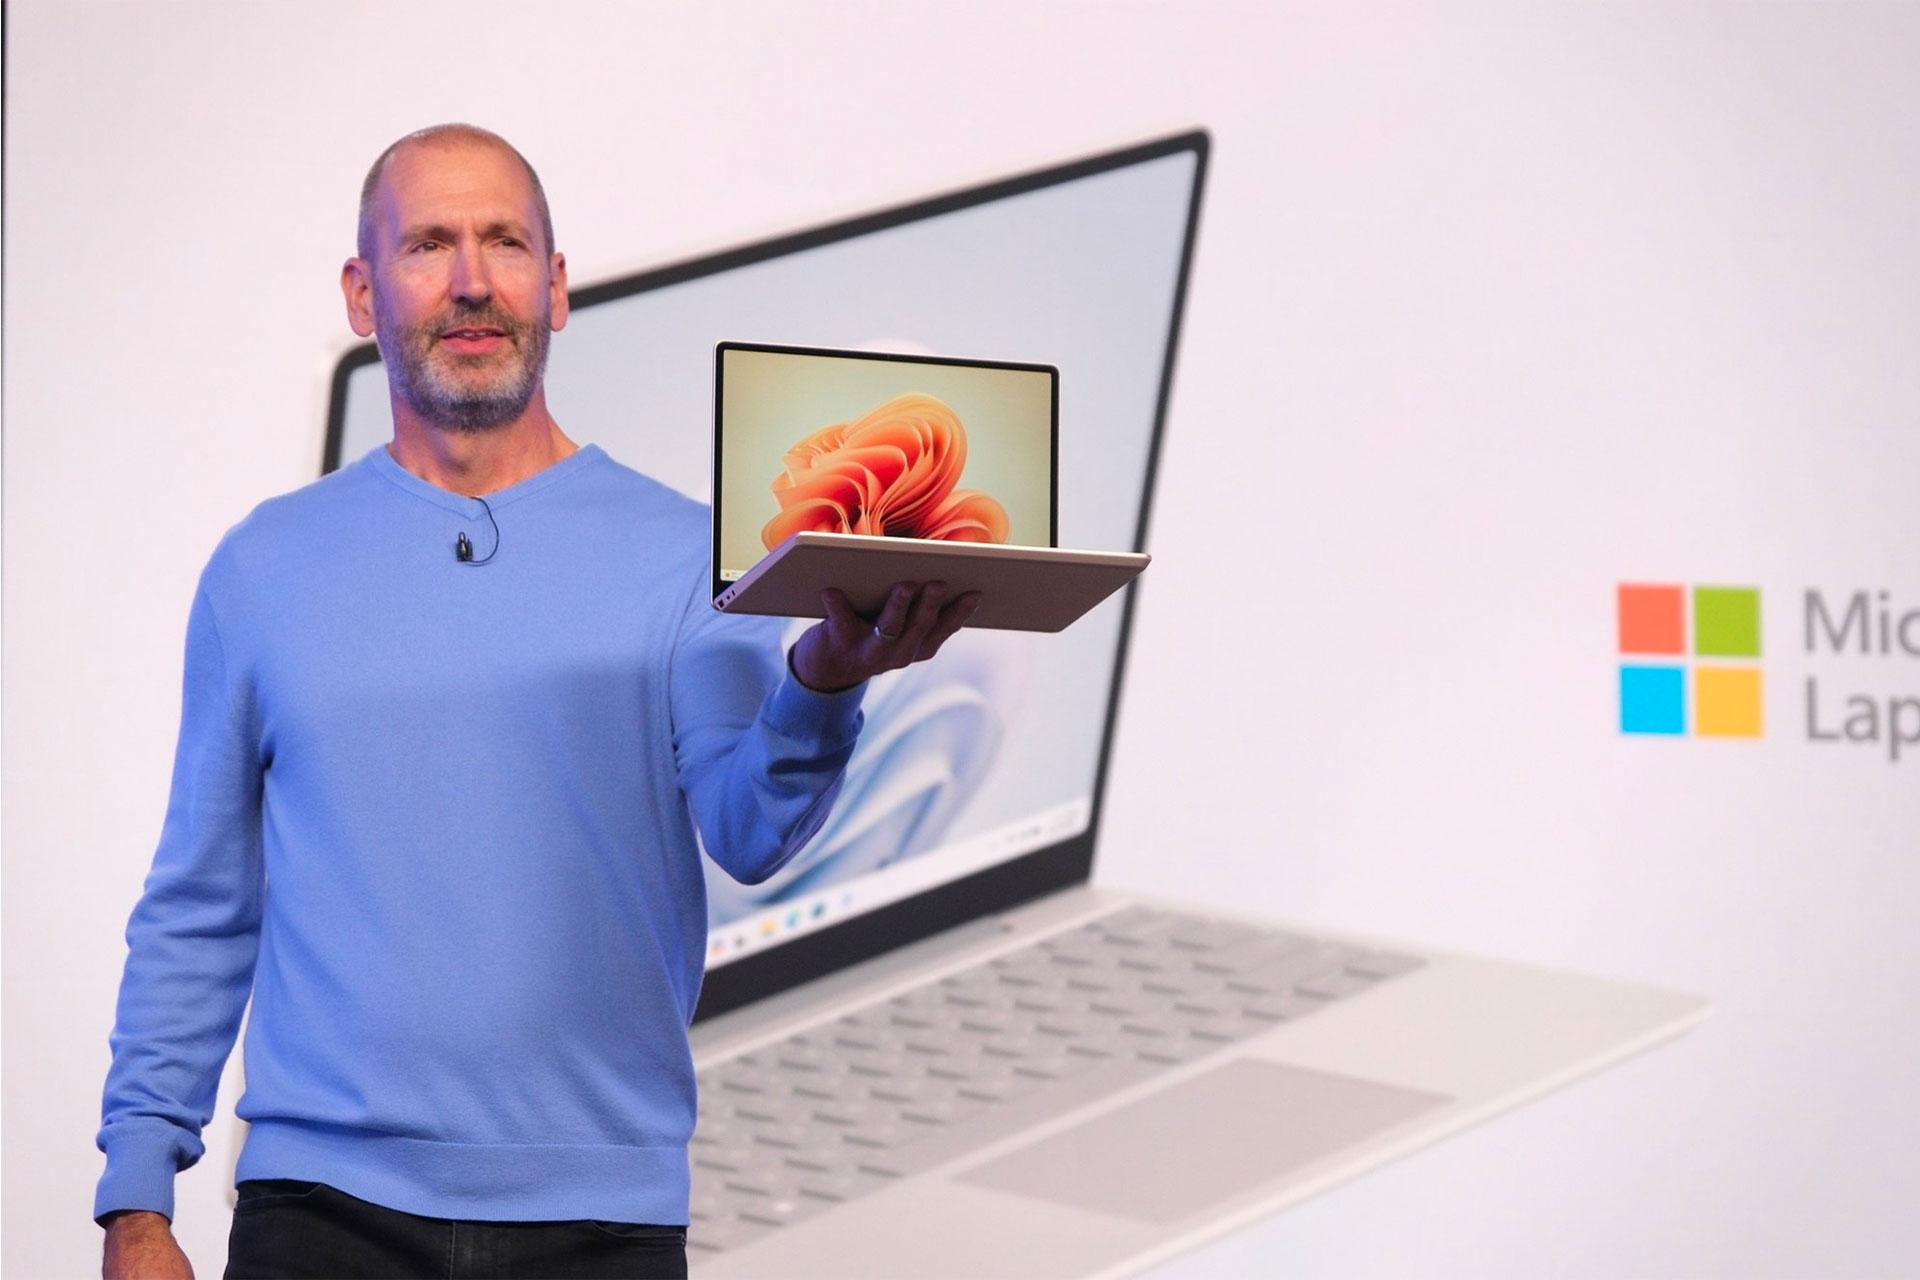 مردی سرفیس لپ تاپ گو ۳ را در دست گرفته است